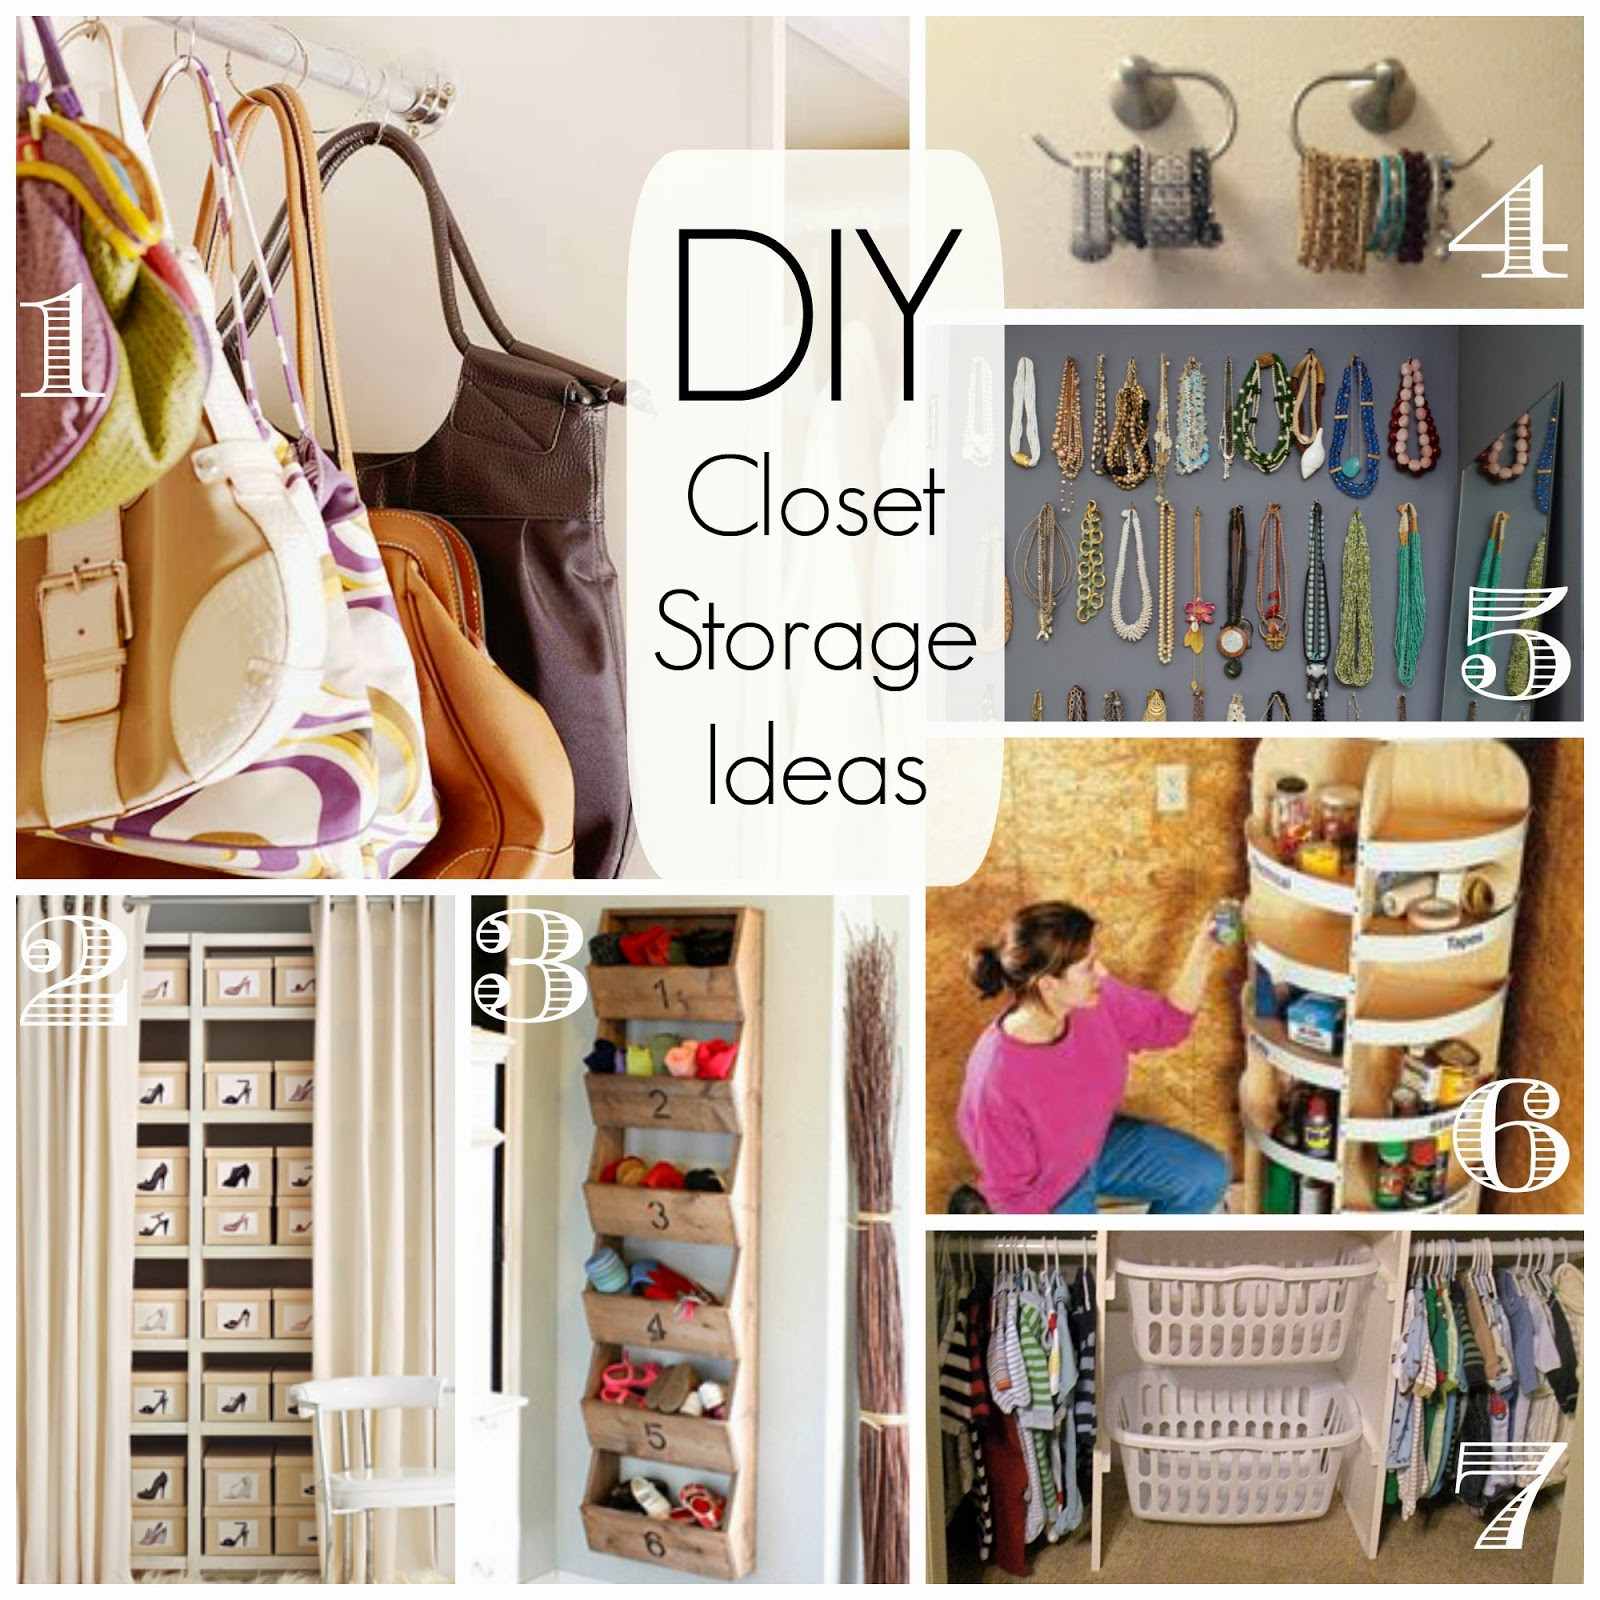 Closet Organizer Ideas DIY
 How To Build A Closet OrganizerConfession